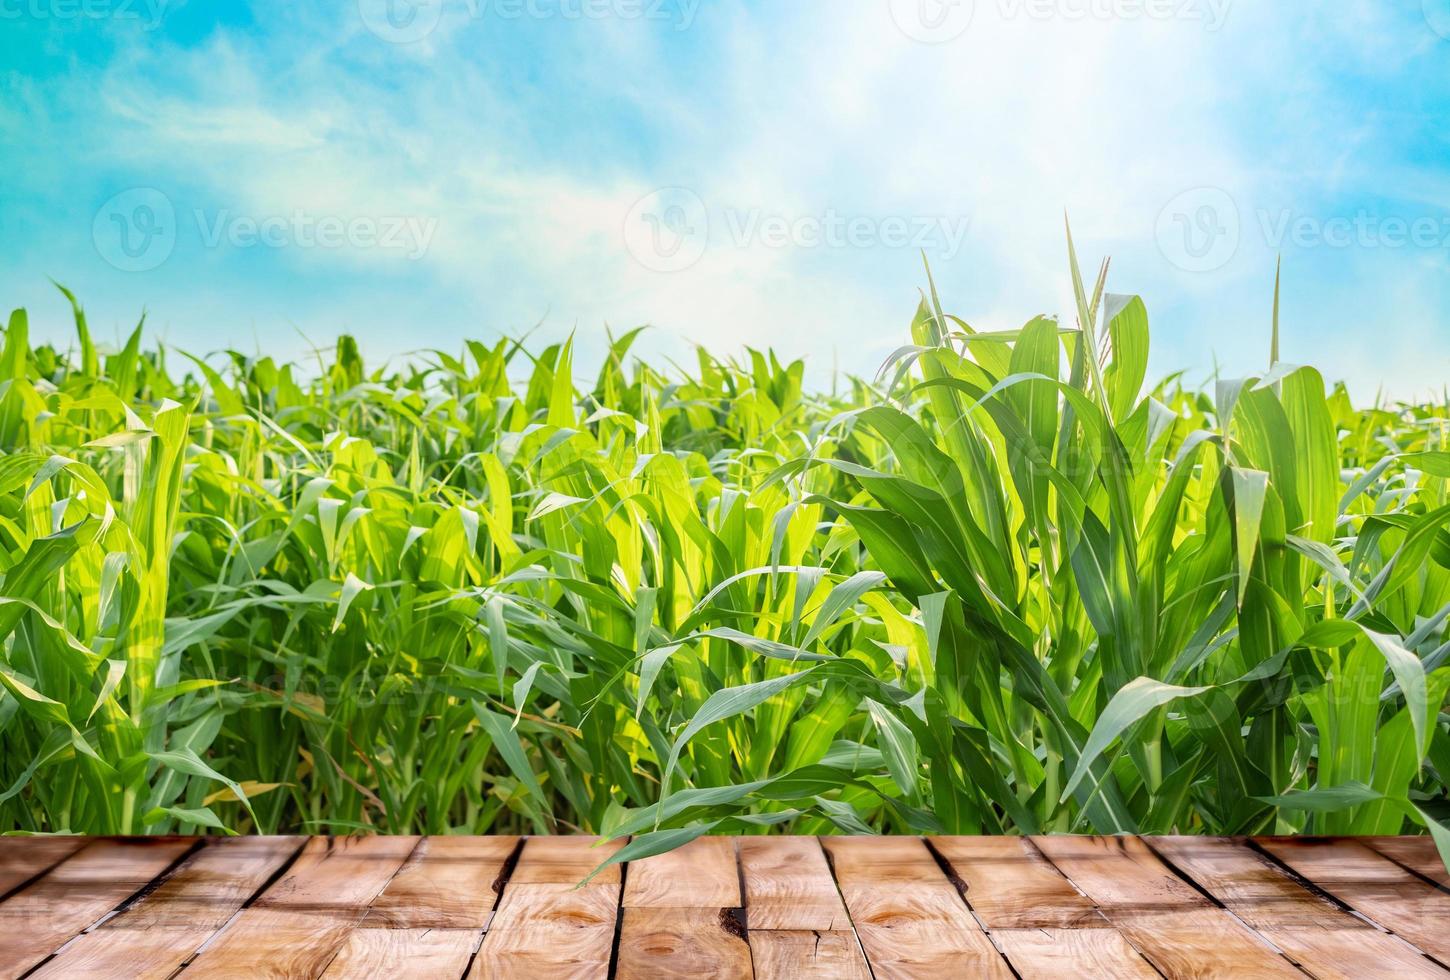 schön hölzern Tabelle Fußboden mit Grün Mais Feld Natur und Blau Himmel mit Sonnenlicht Hintergrund, Landwirtschaft Produkt Stehen Vitrine Hintergrund foto